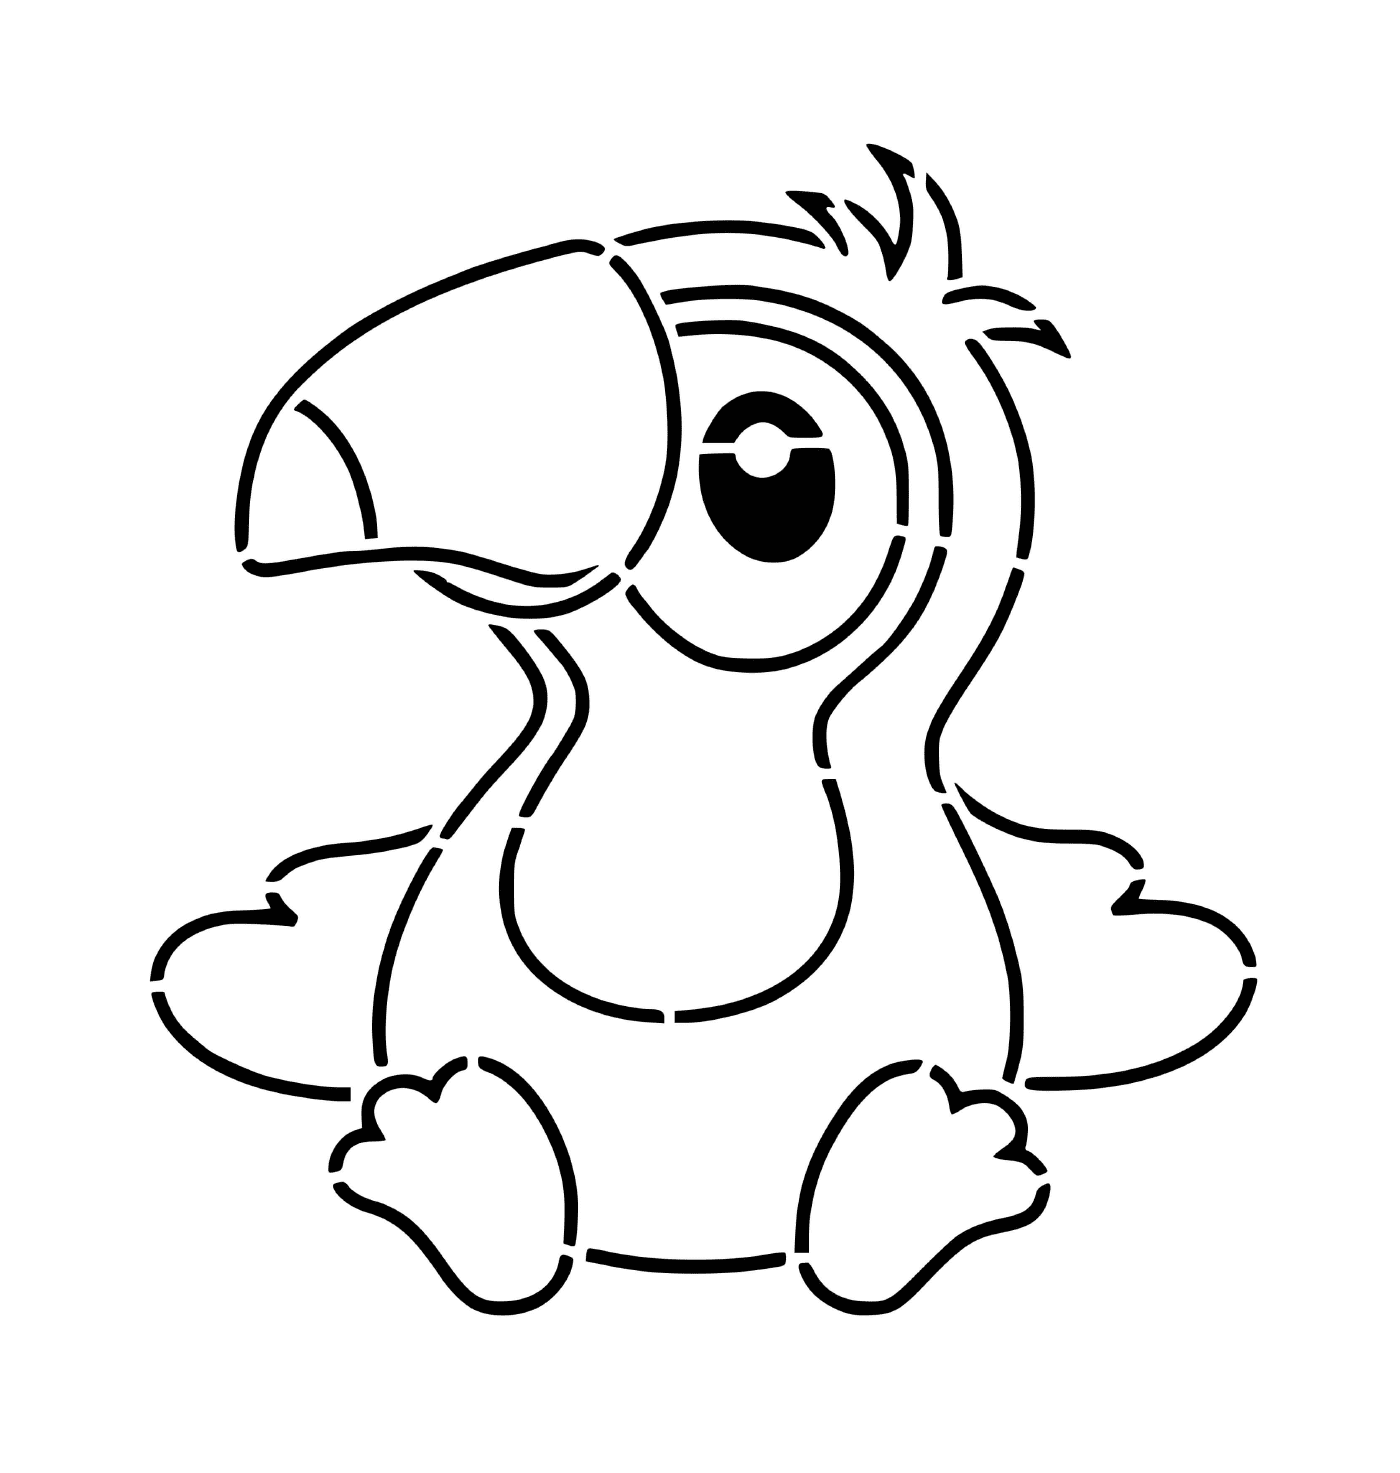   Bébé toucan 